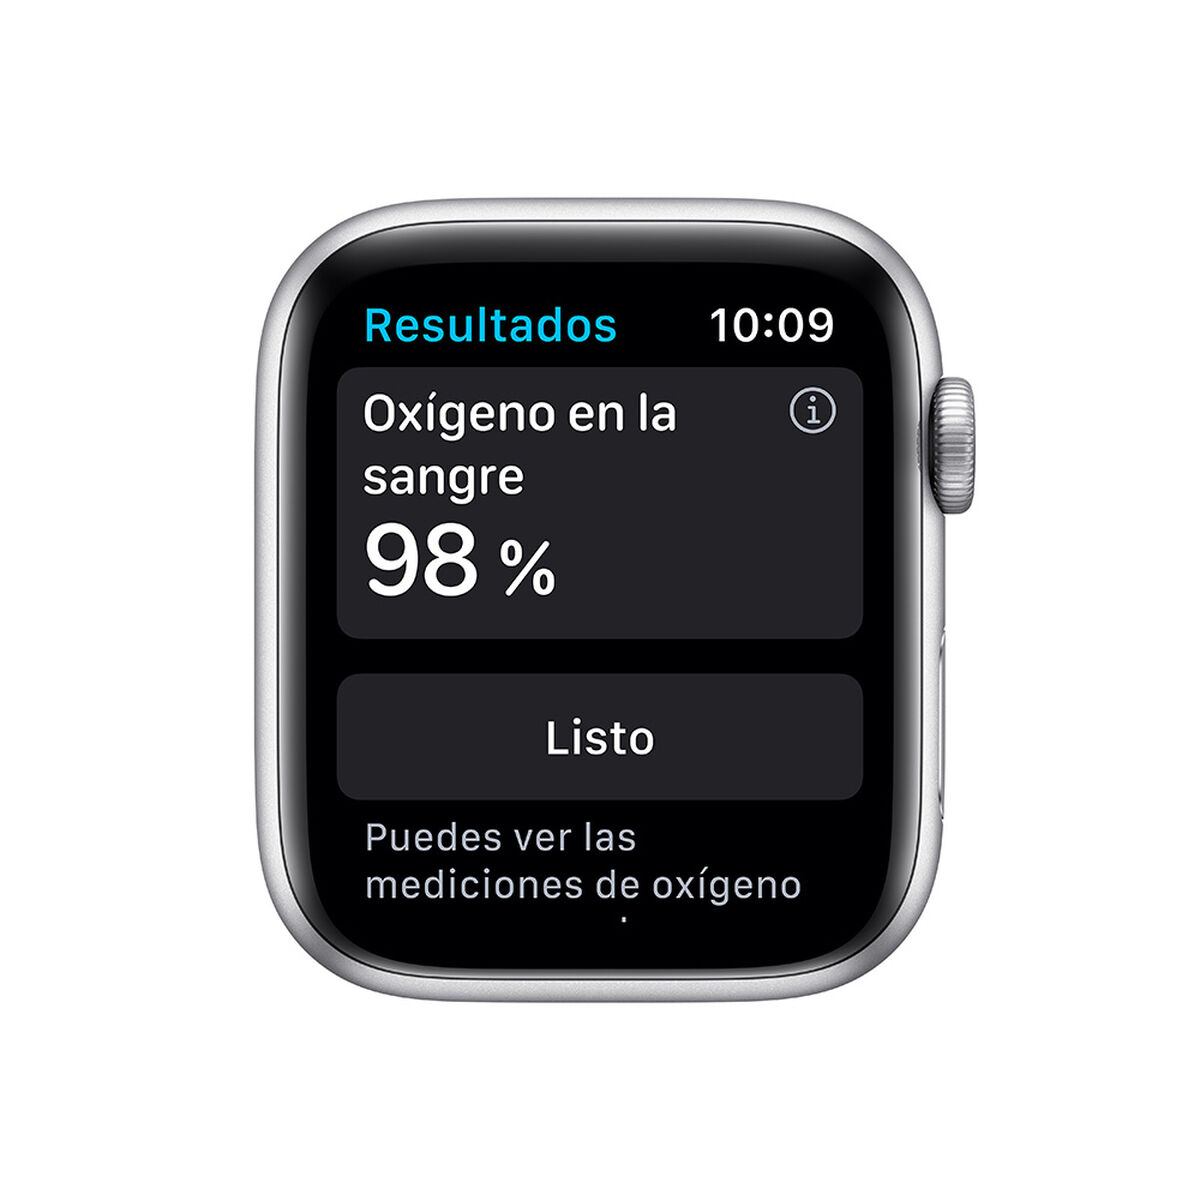 Smartwatch Apple Watch S6 44mm Silver